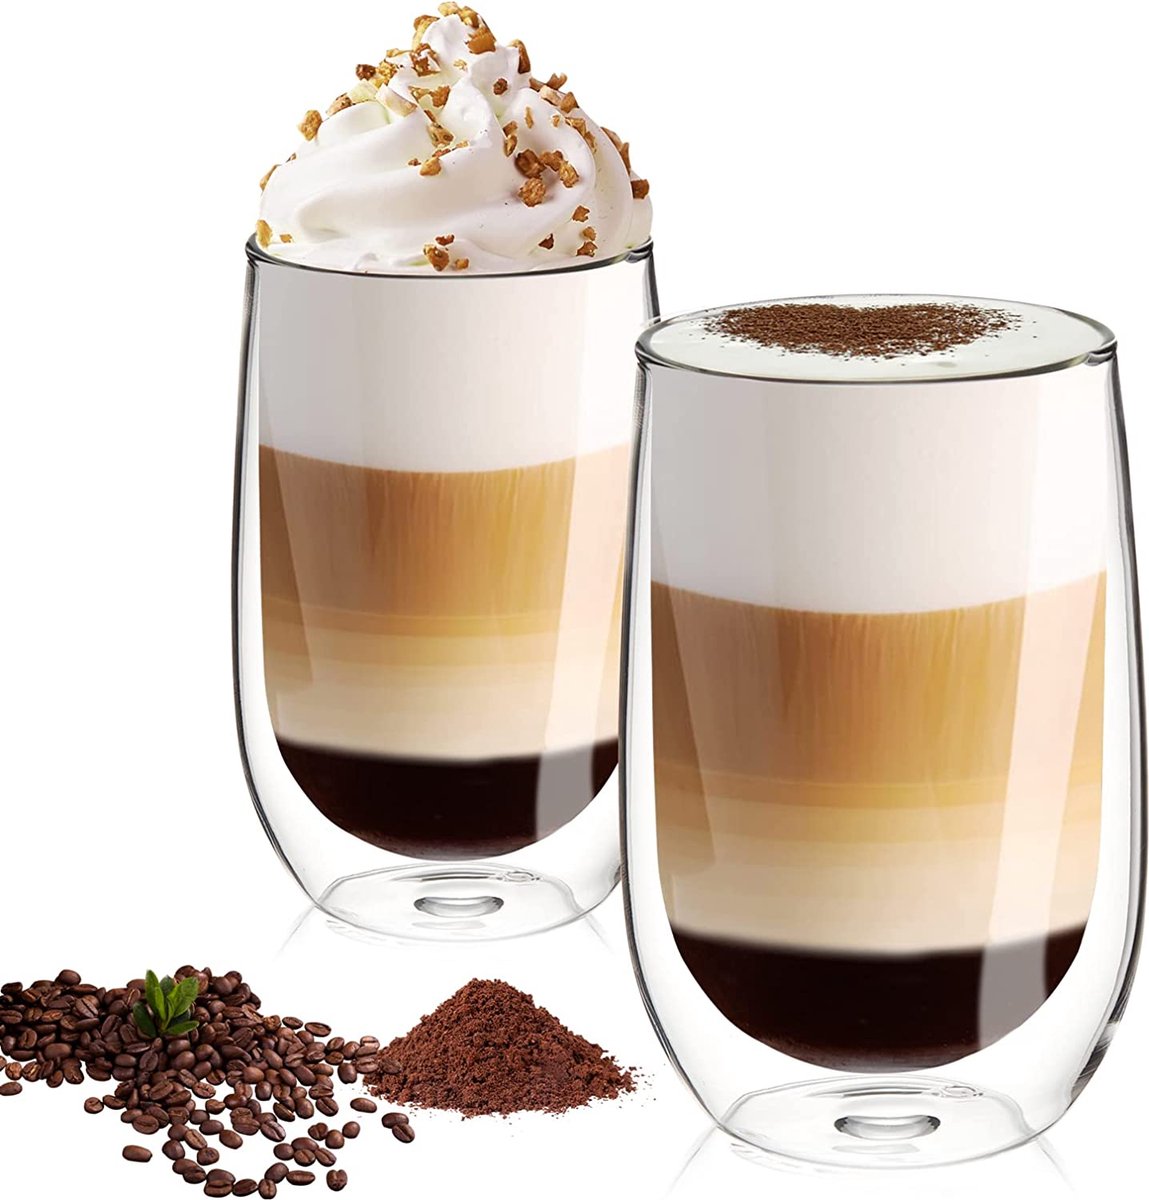 Tasse double paroi 310ML Espresso - Café au lait - Cappuccino - Sunday